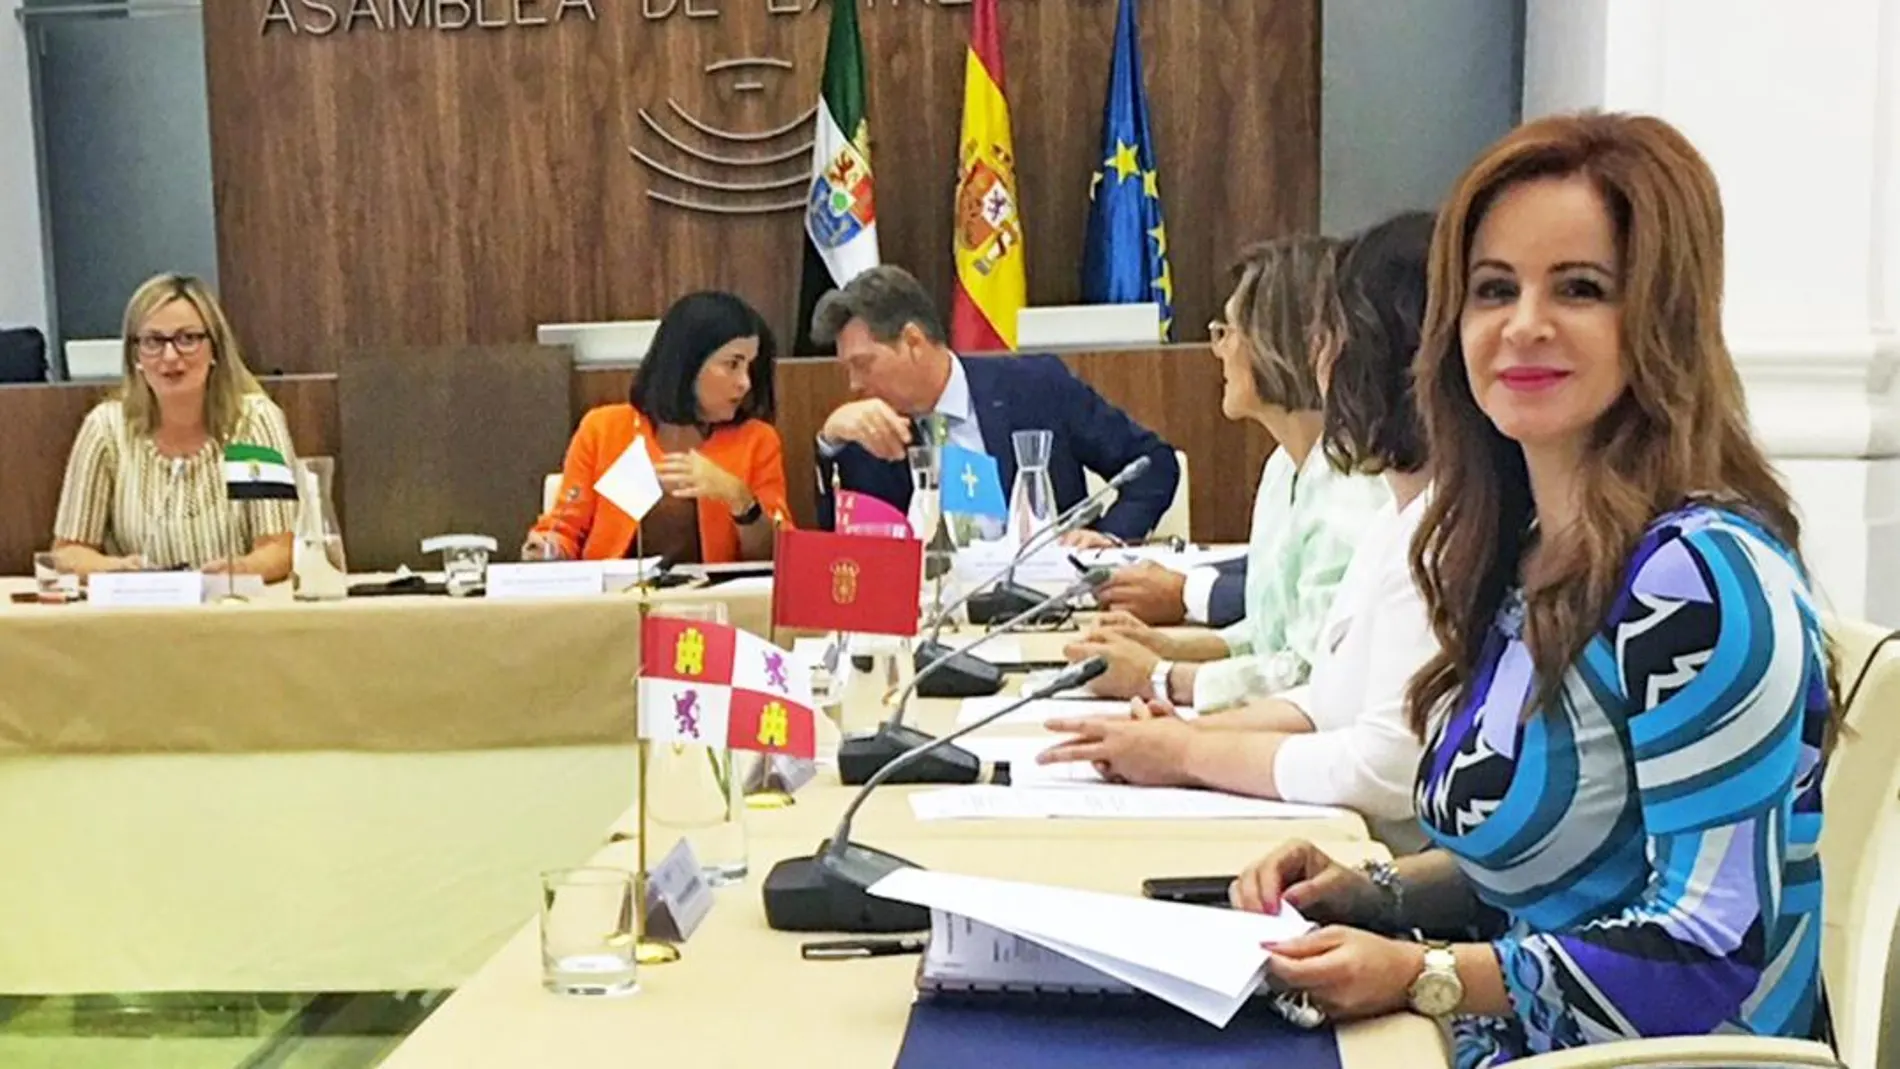 La presidenta de las Cortes, Silvia Clemente, asiste a la reunión de presidentes de Presidentes de Parlamentos Autonómicos (Coprepa) en Mérida